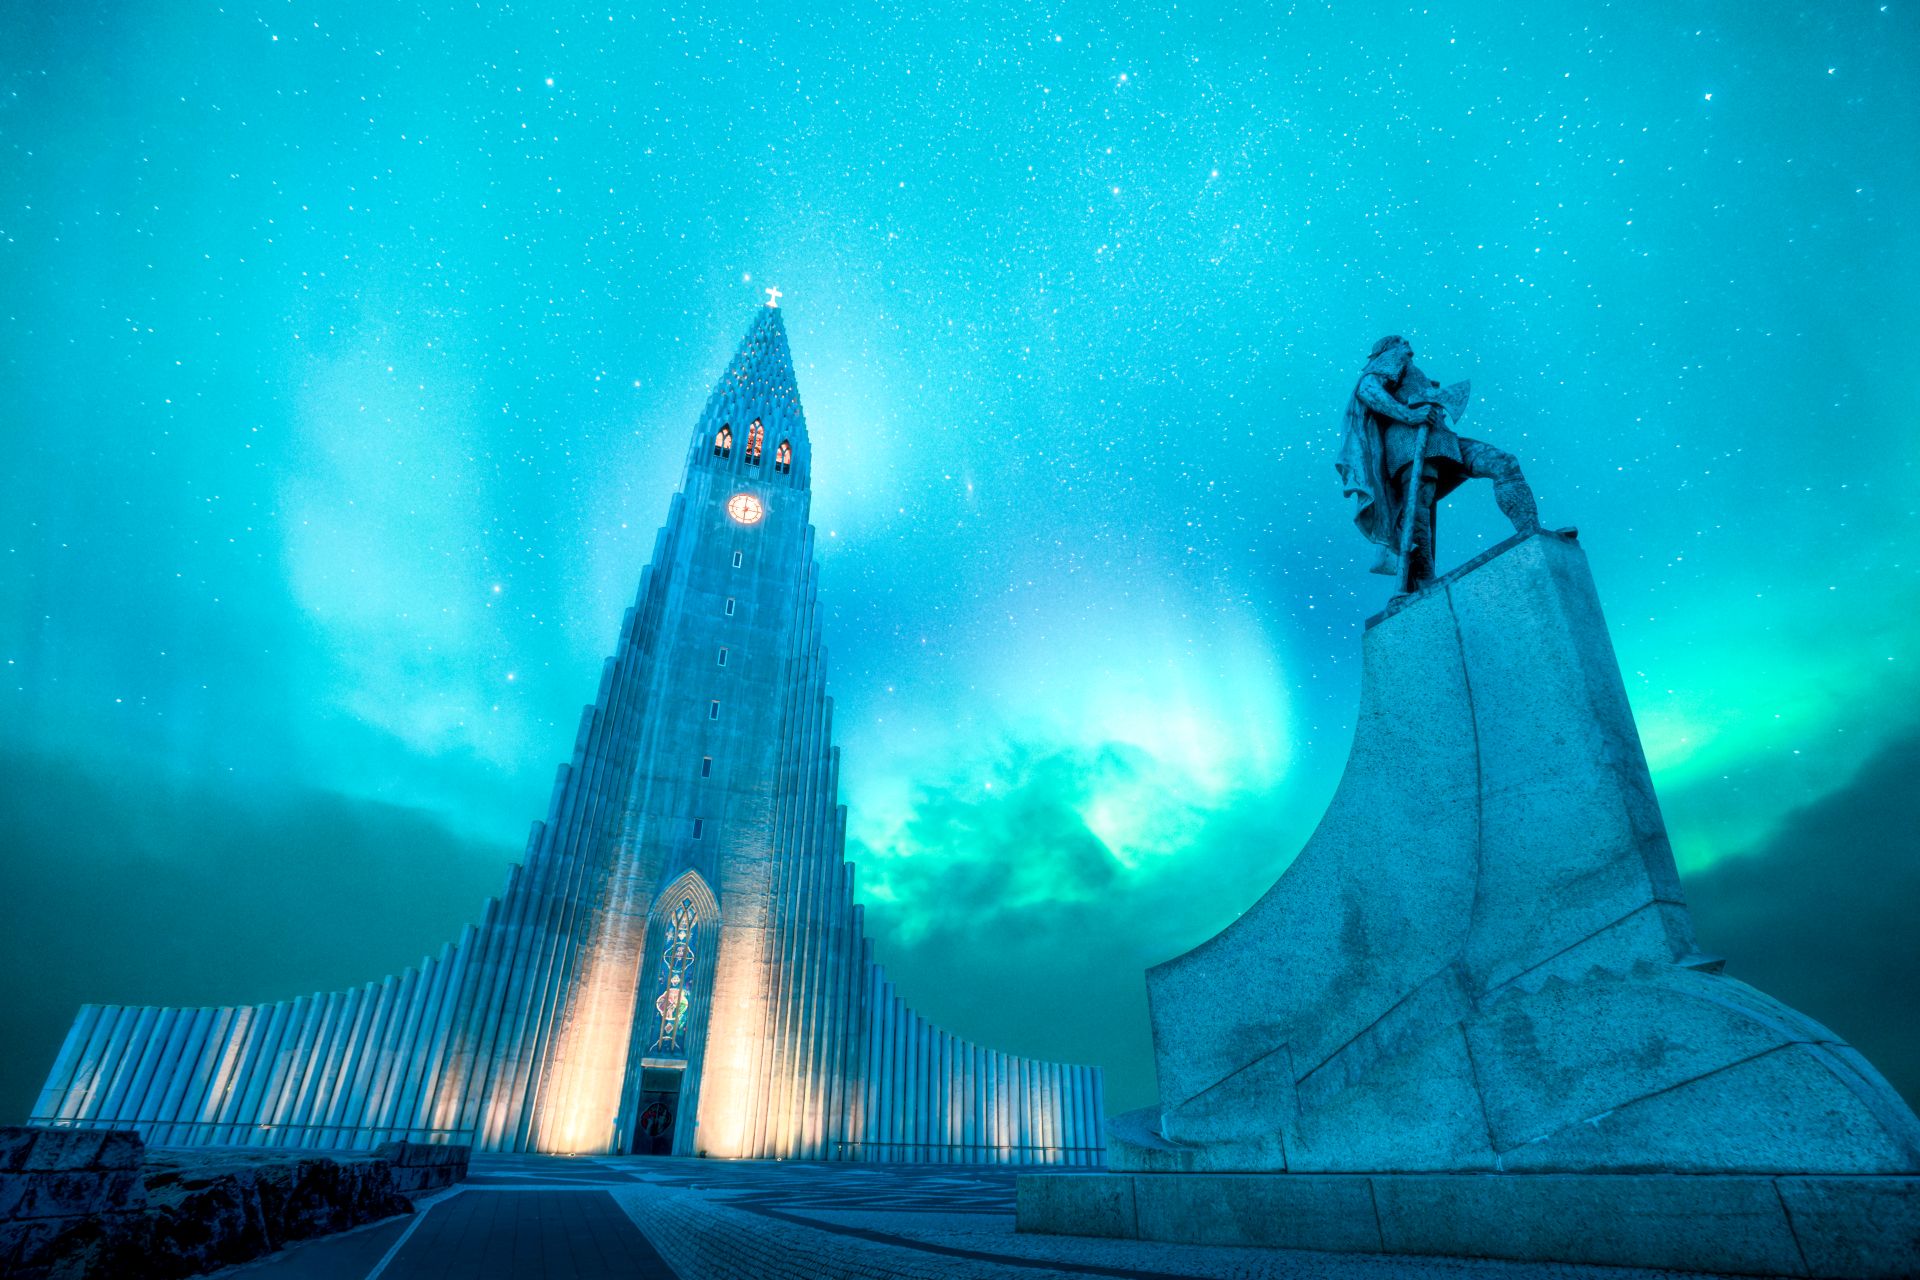 Hallgrimskirkja è una delle chiese luterane più alte e famose di Reykjavik.